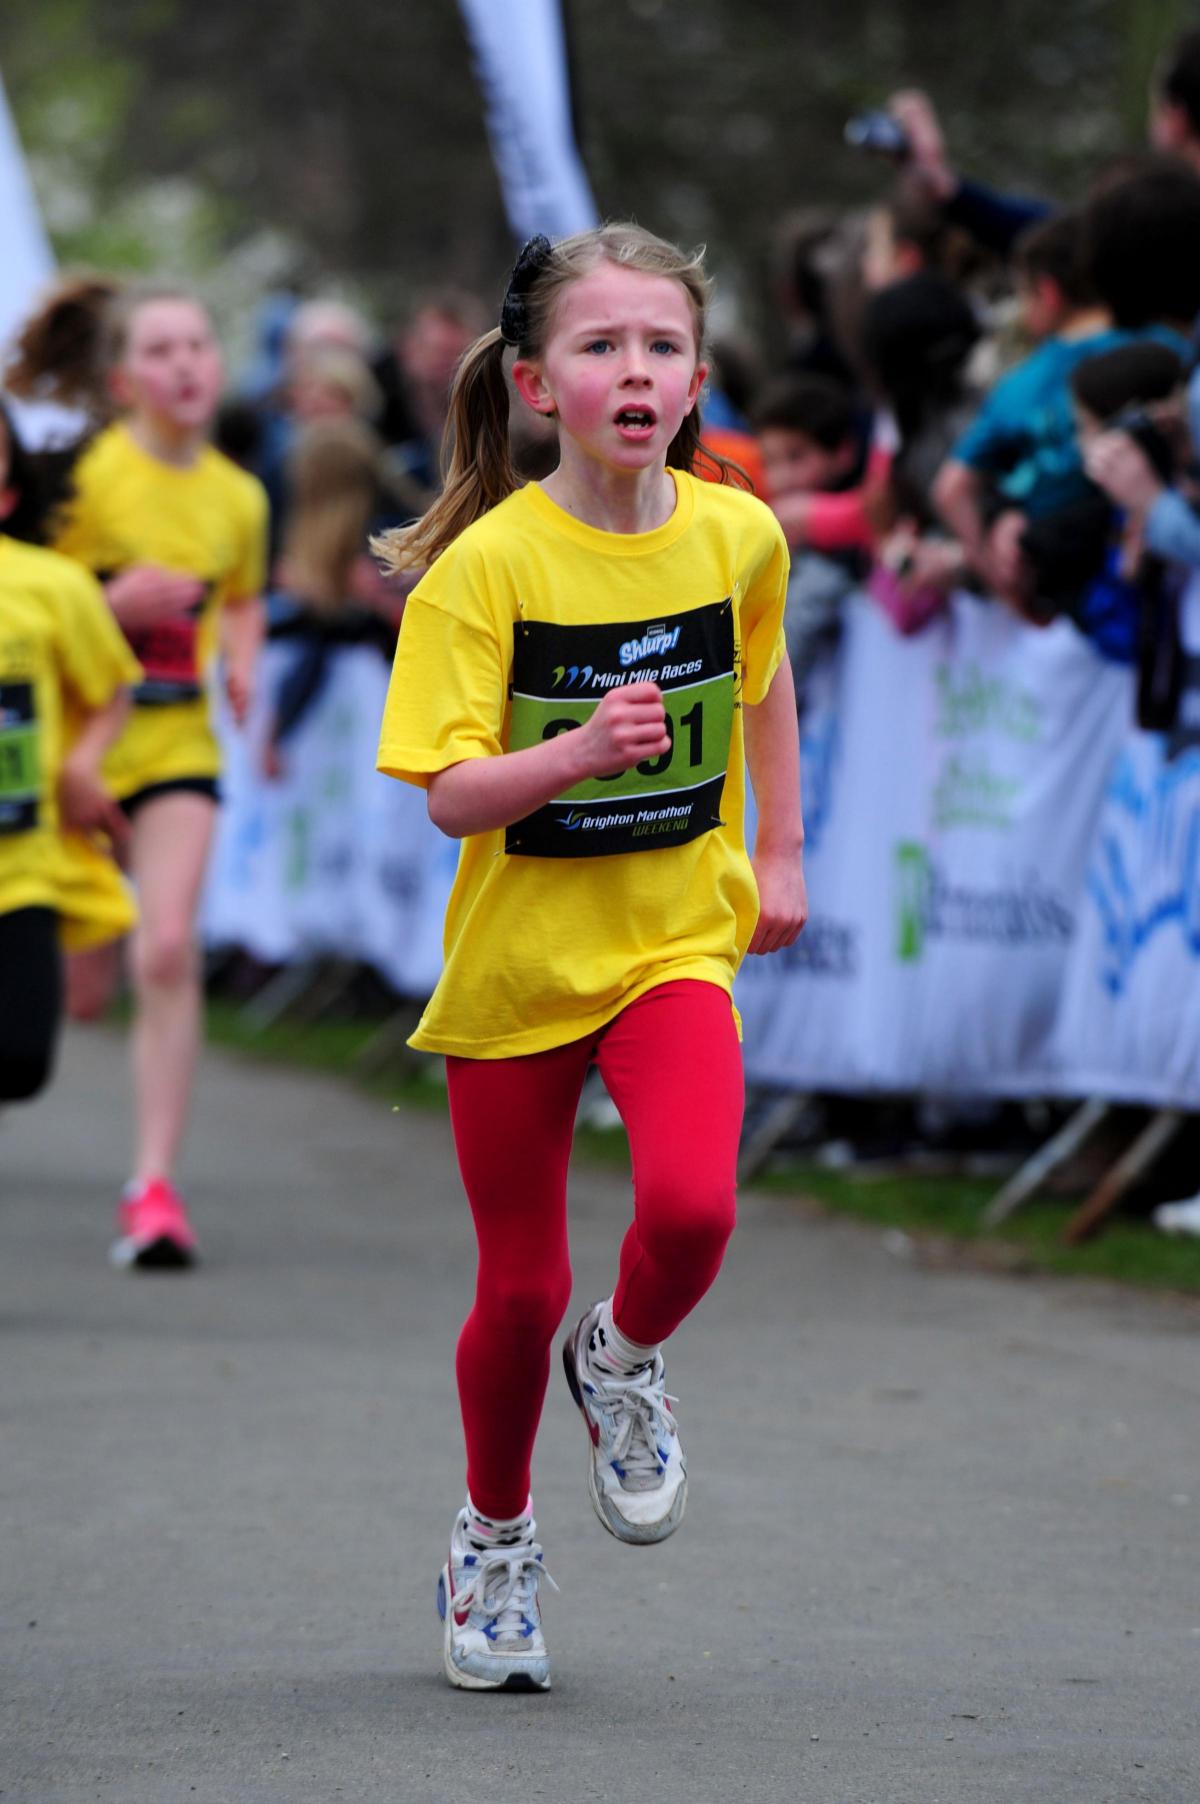 Pictures from the Brighton Marathon 2014 Mini Mile